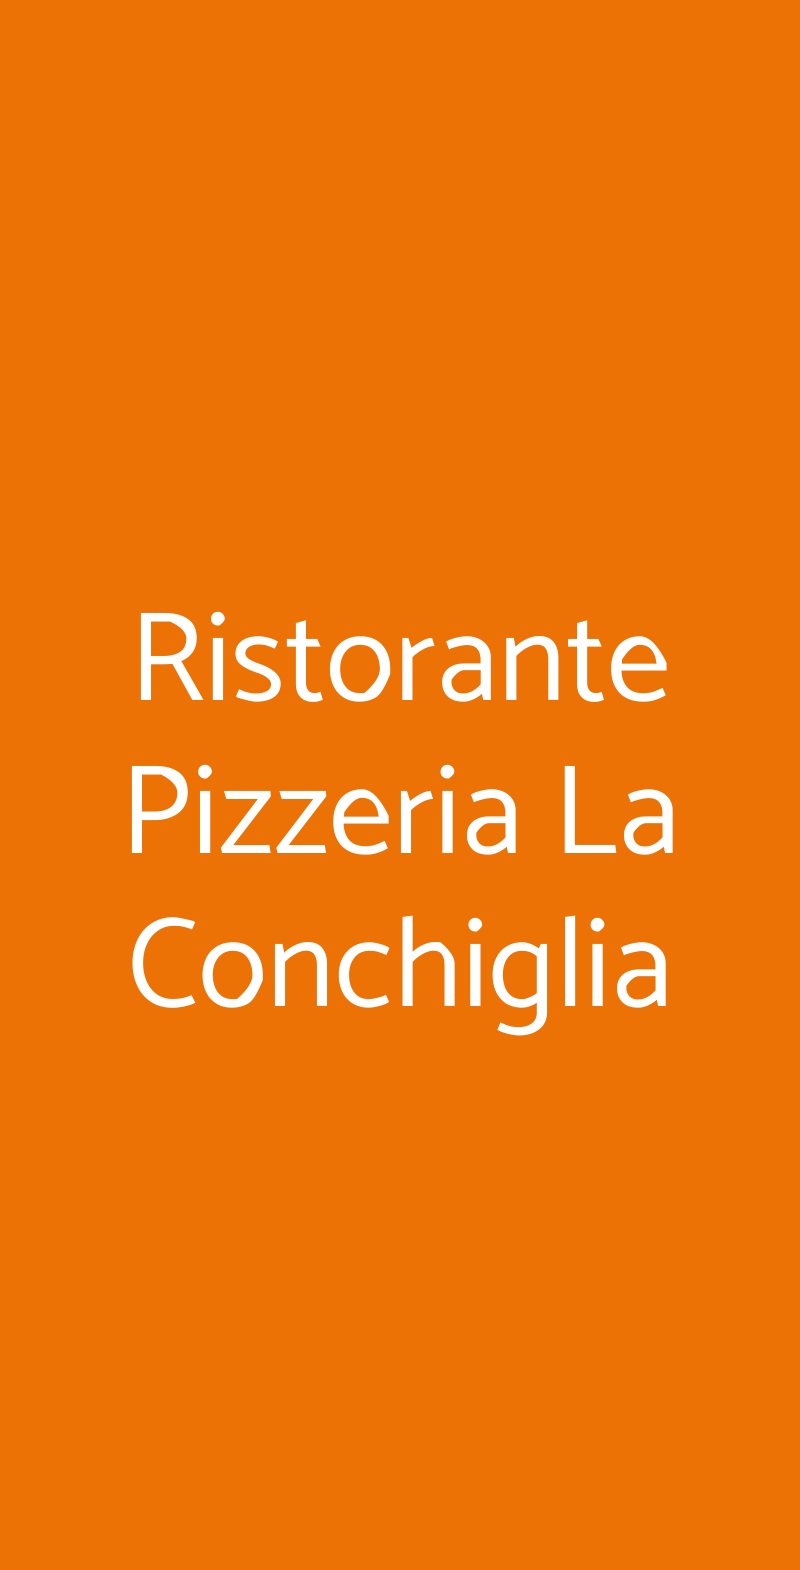 Ristorante Pizzeria La Conchiglia Varese menù 1 pagina